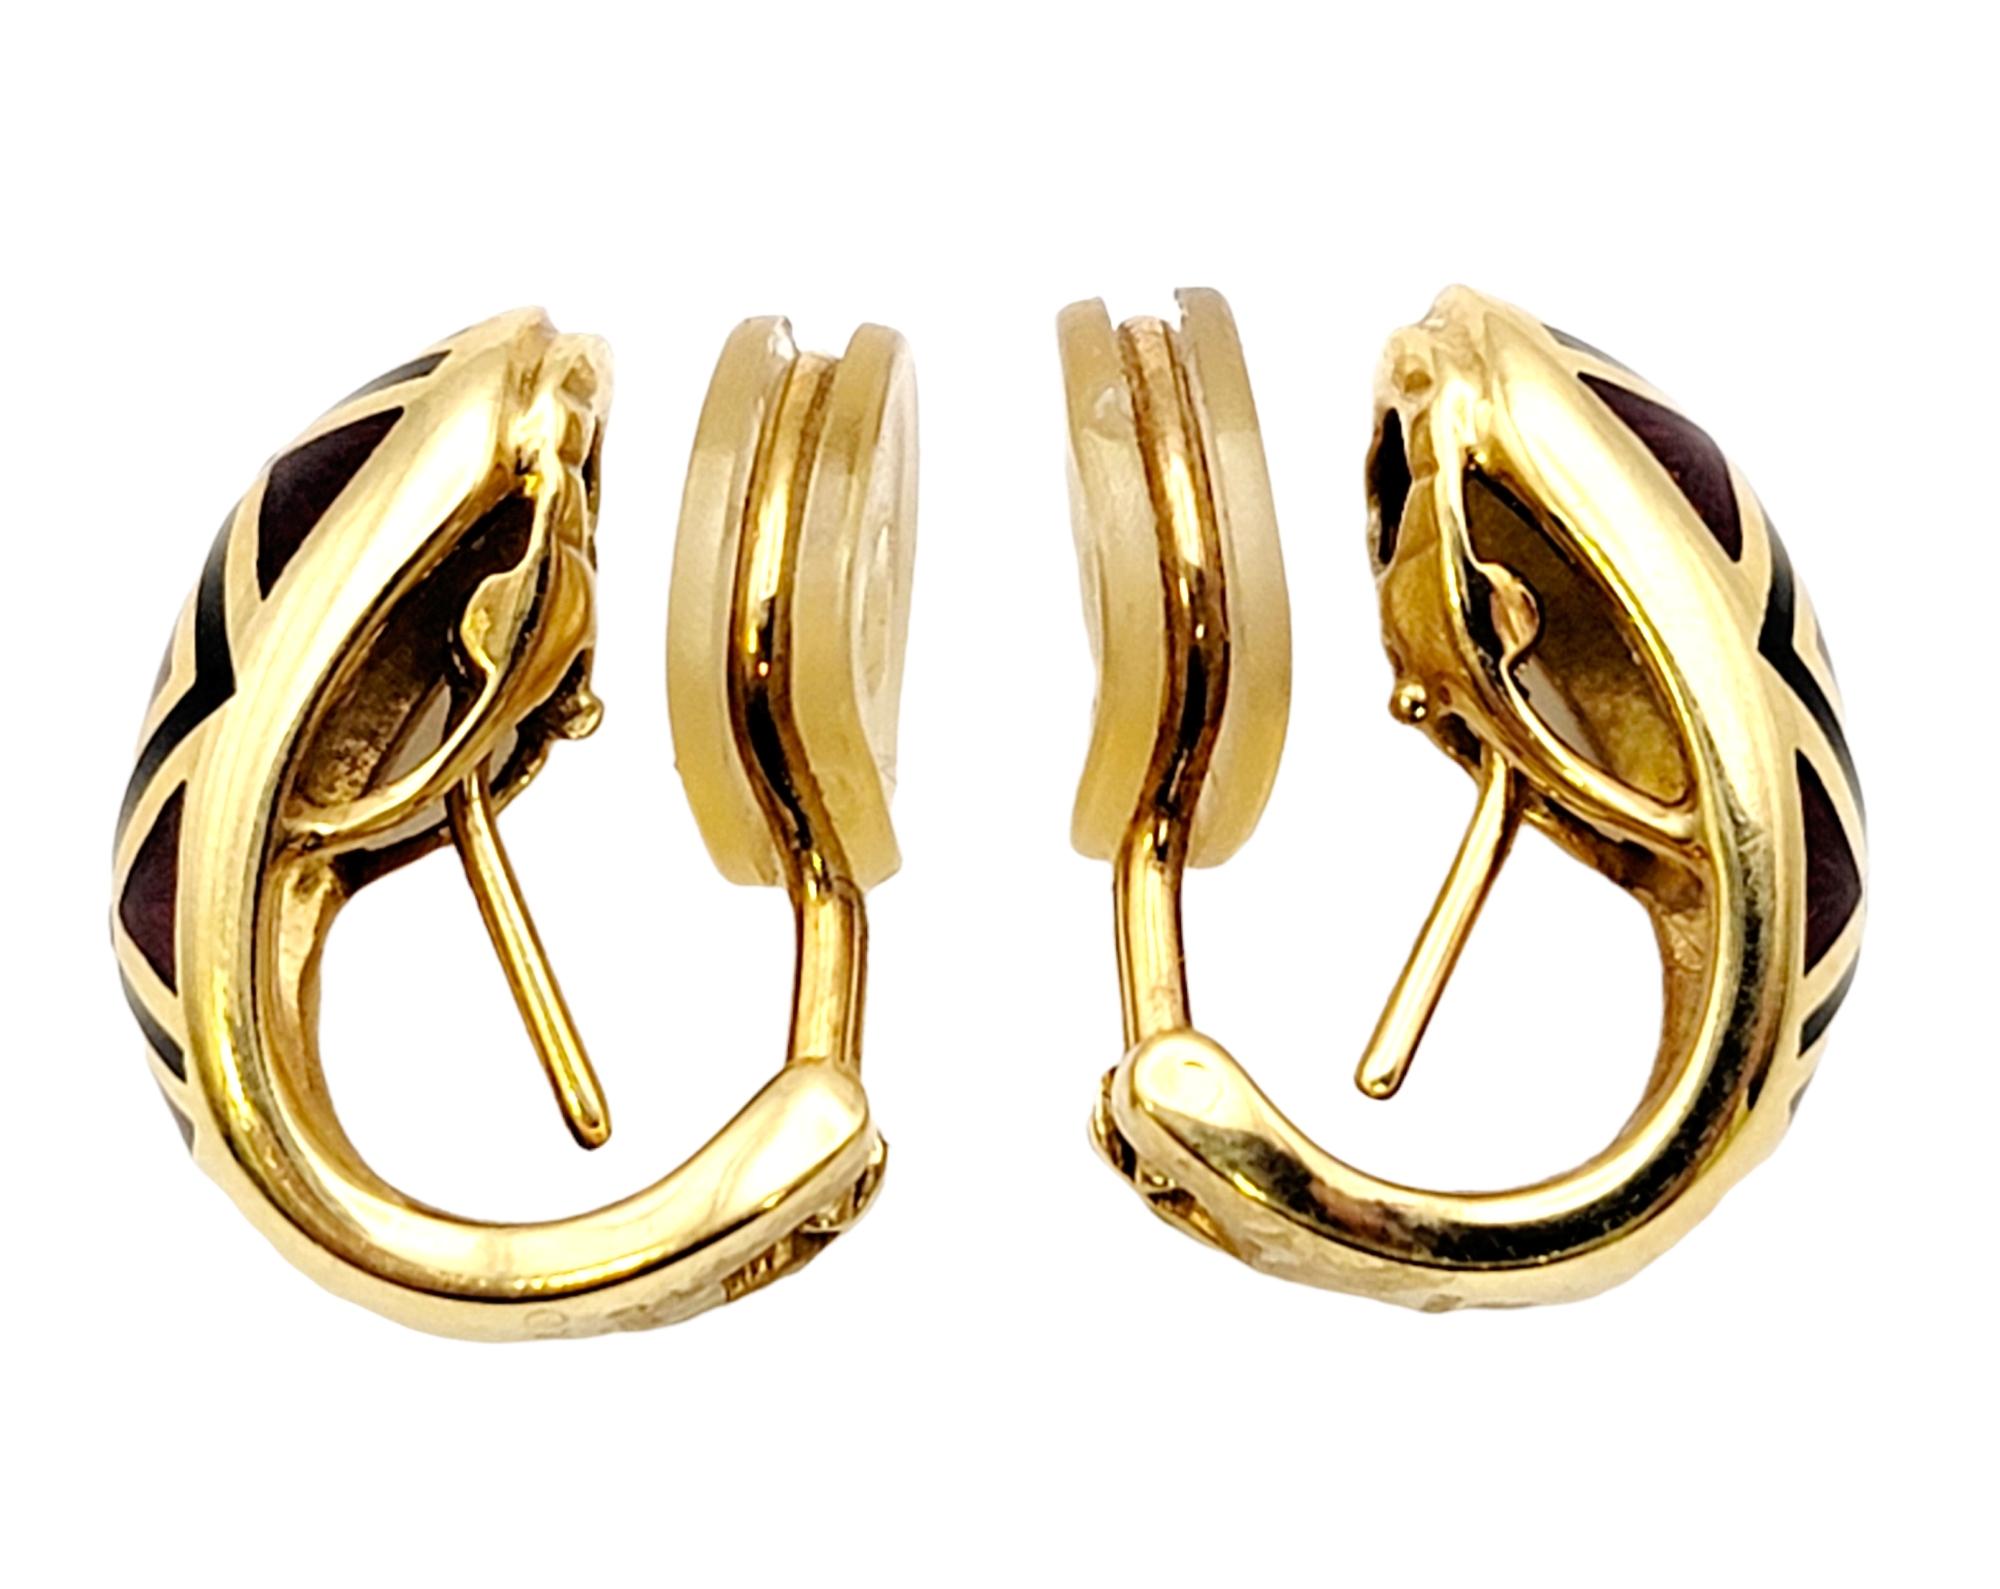 Women's Faberge Guilloche Enamel and Diamond Half Hoop Earrings in 18 Karat Yellow Gold For Sale